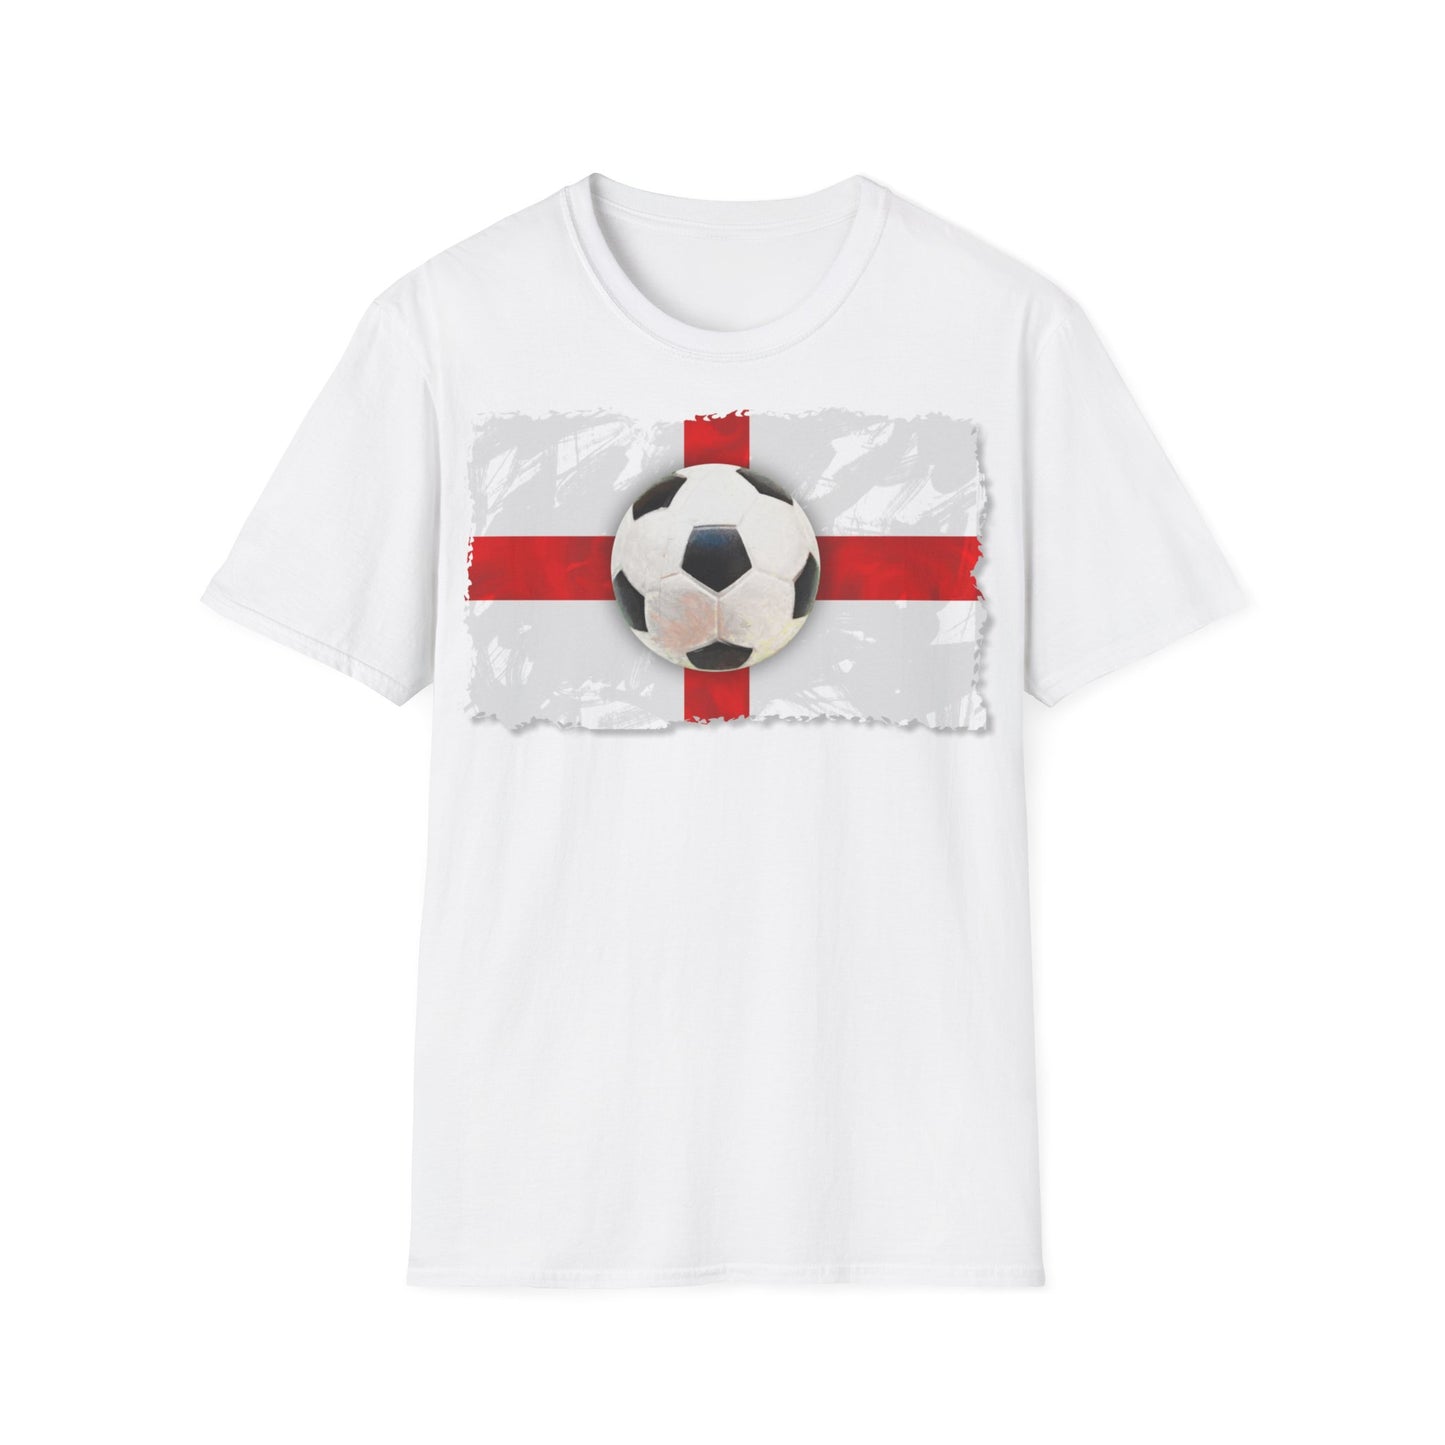 England Flag and Football T-Shirt